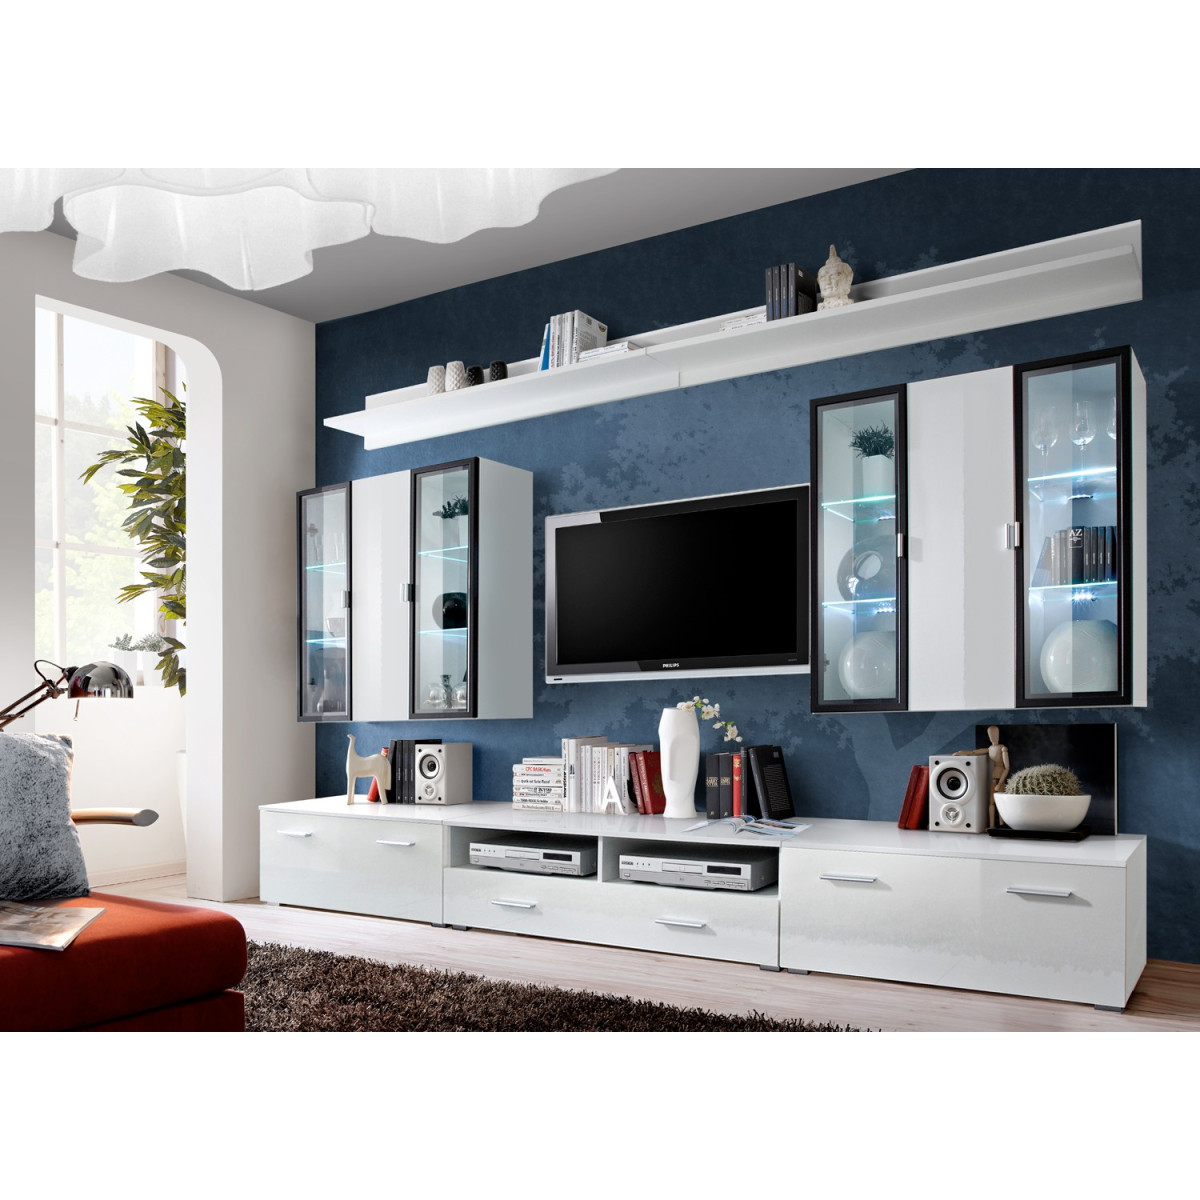 Meuble tv suspendu noir et gris avec cheminée électrique décorative -  Cbc-Meubles